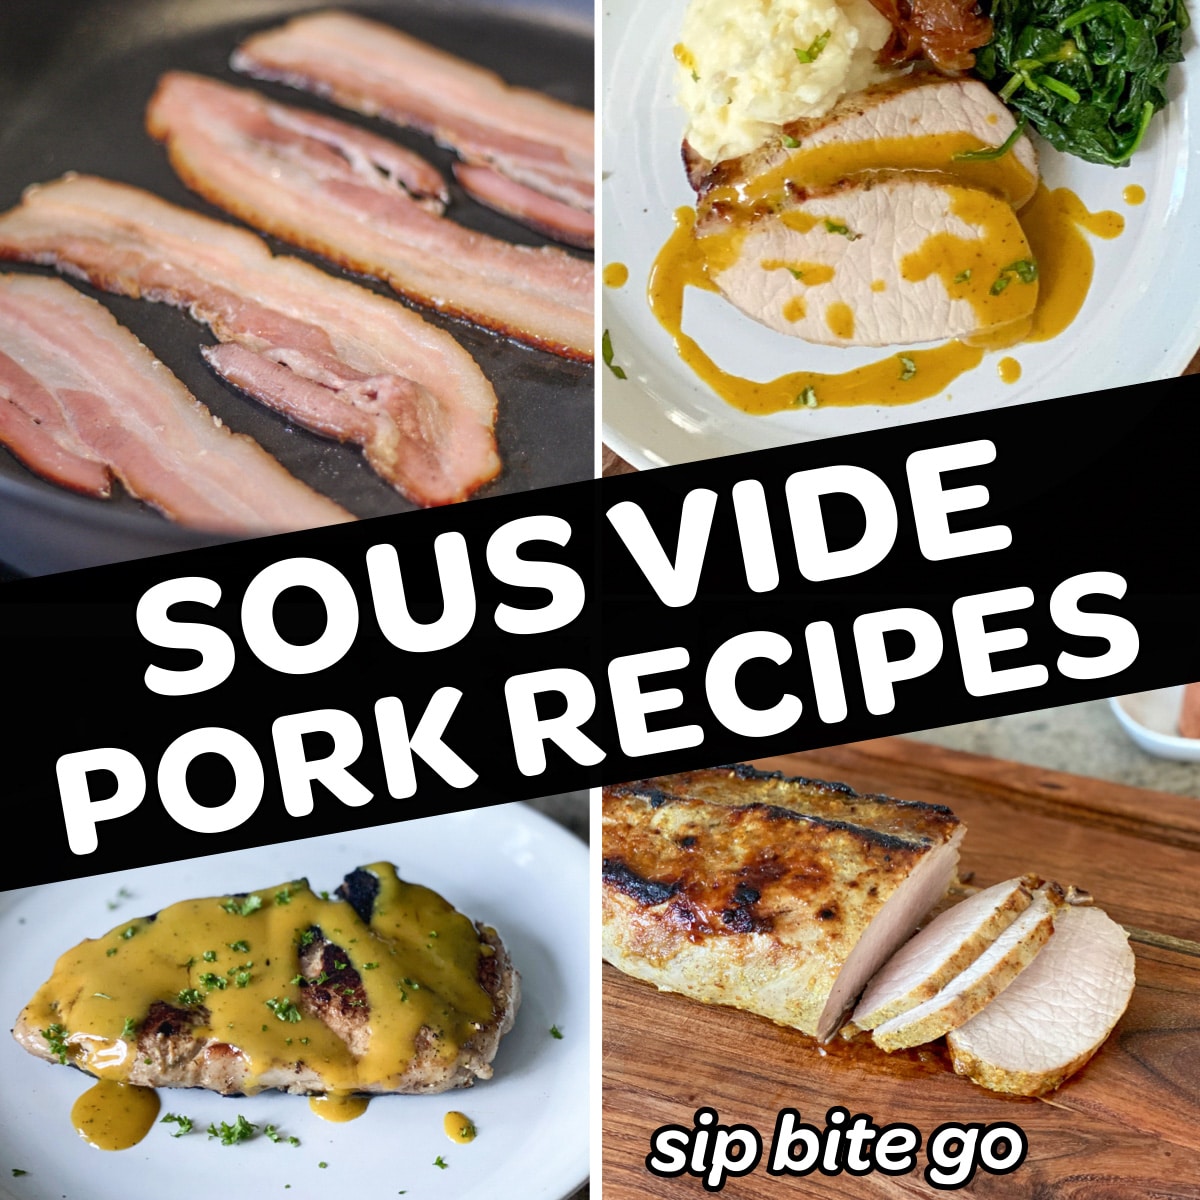 pork sous vide recipes collage feature